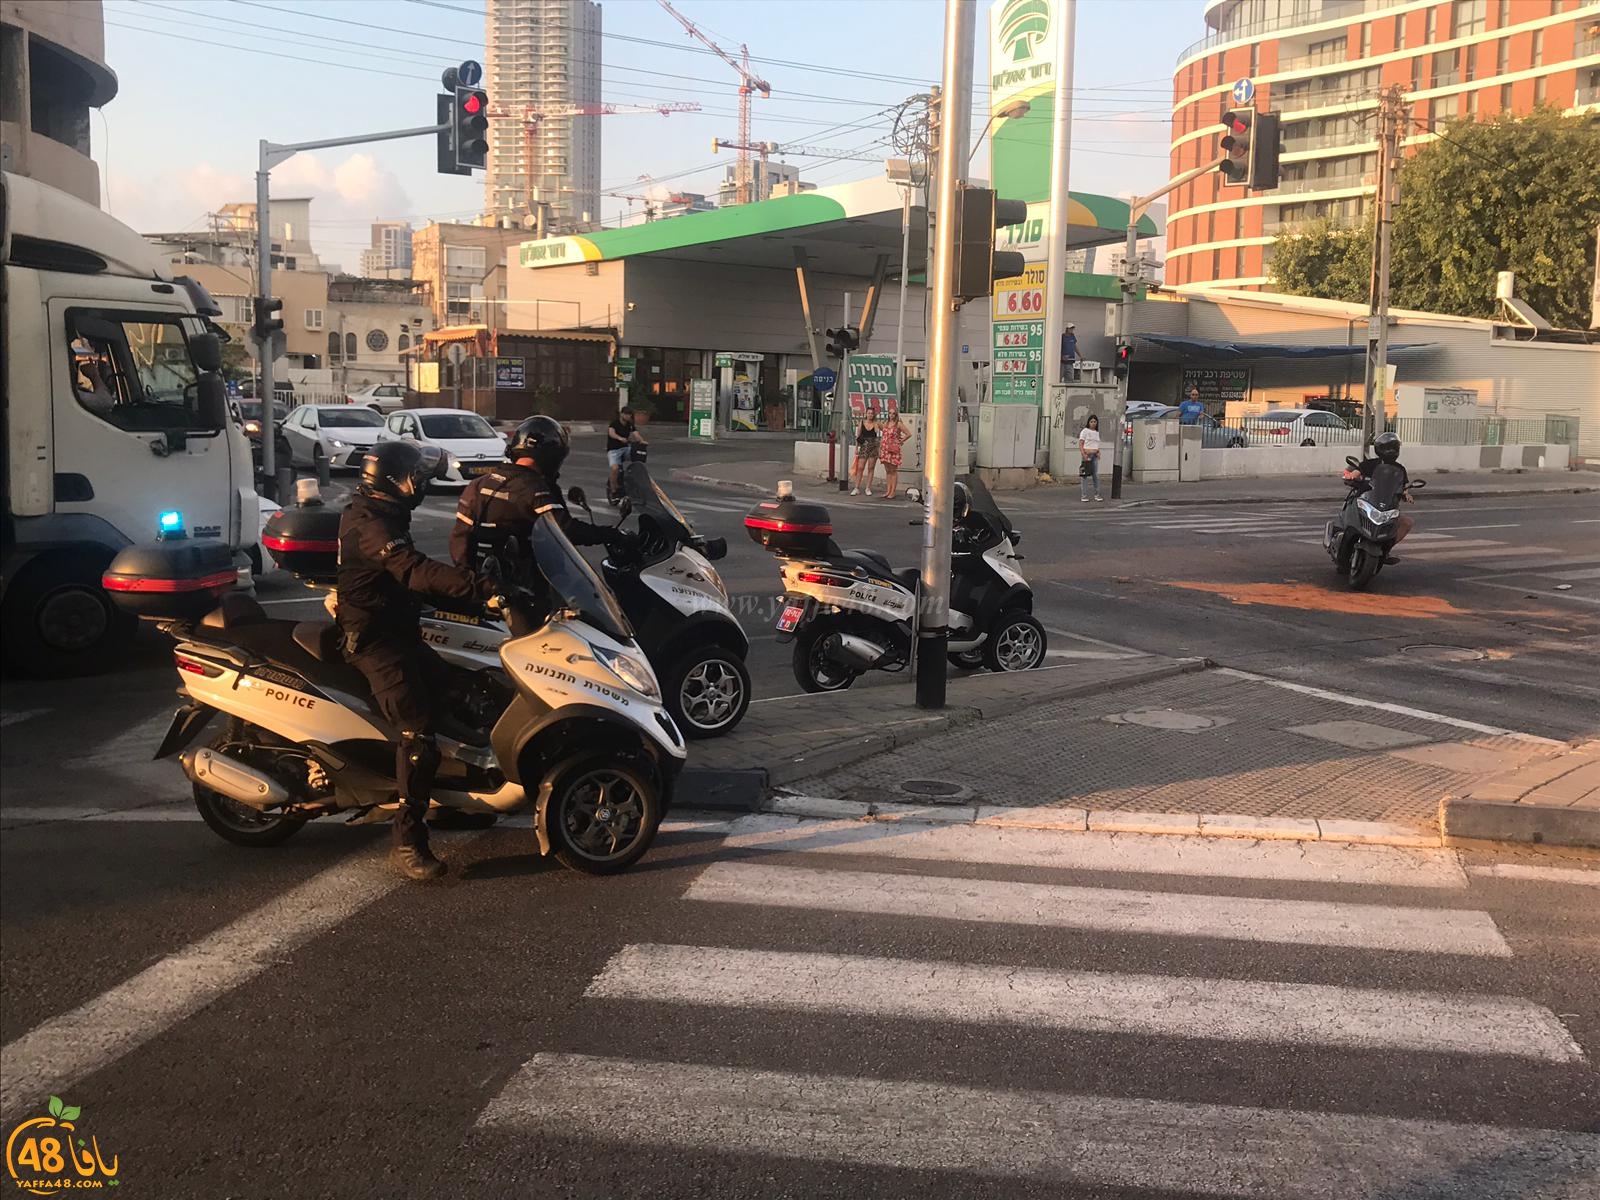   يافا: إصابة خطرة لسيّدة بحادث دهس بالمدينة 